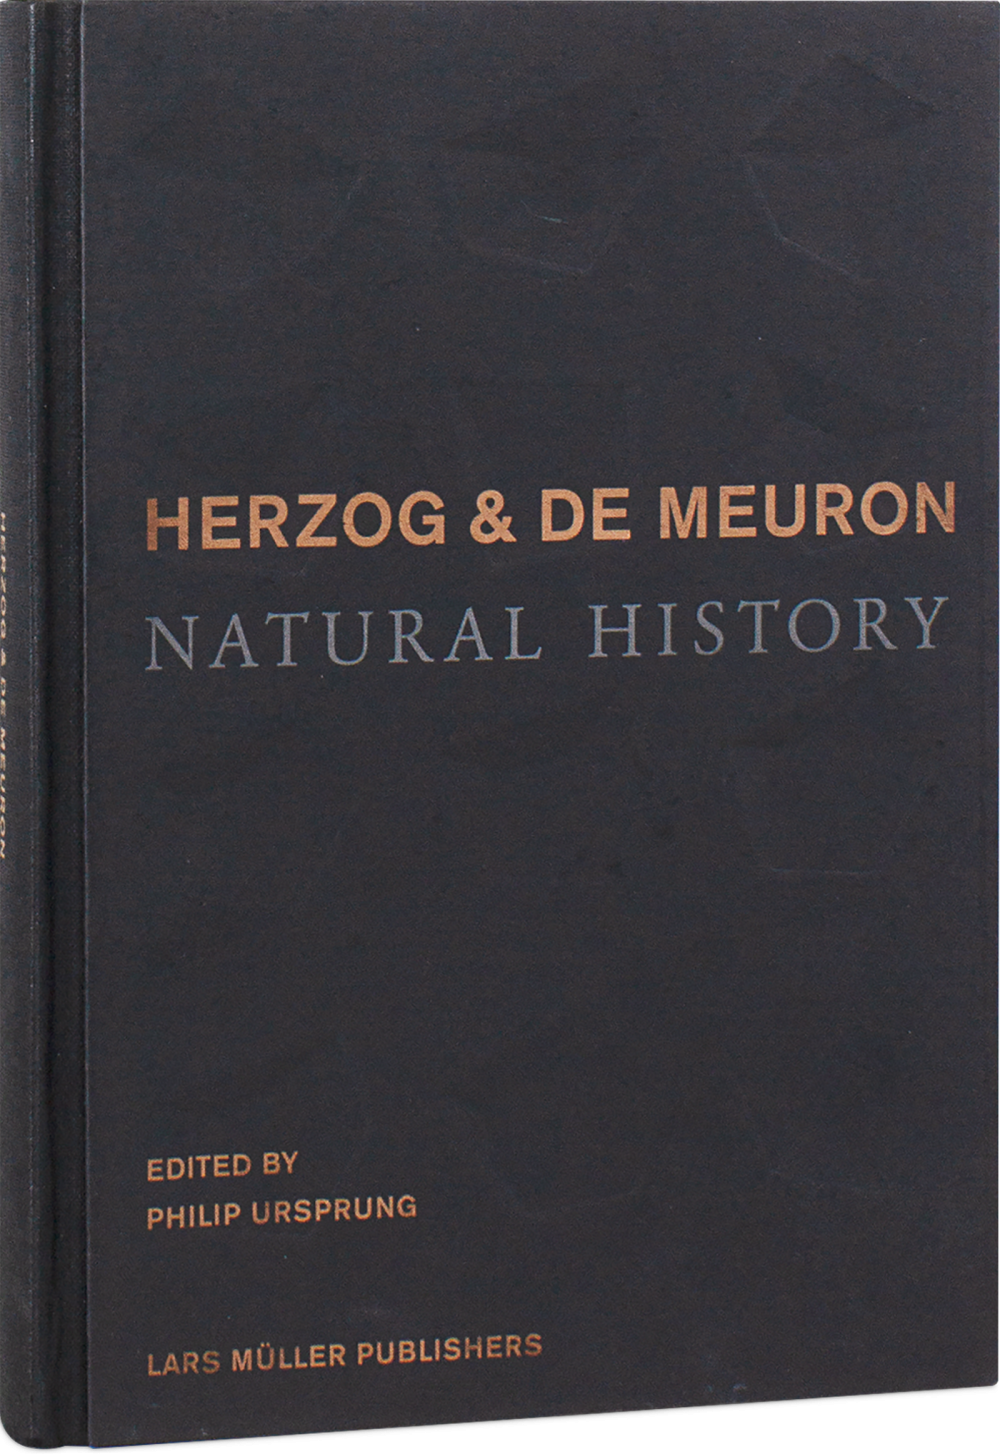 買い公式NATURAL HISTORY / HERZOG & DE MEURON 洋書